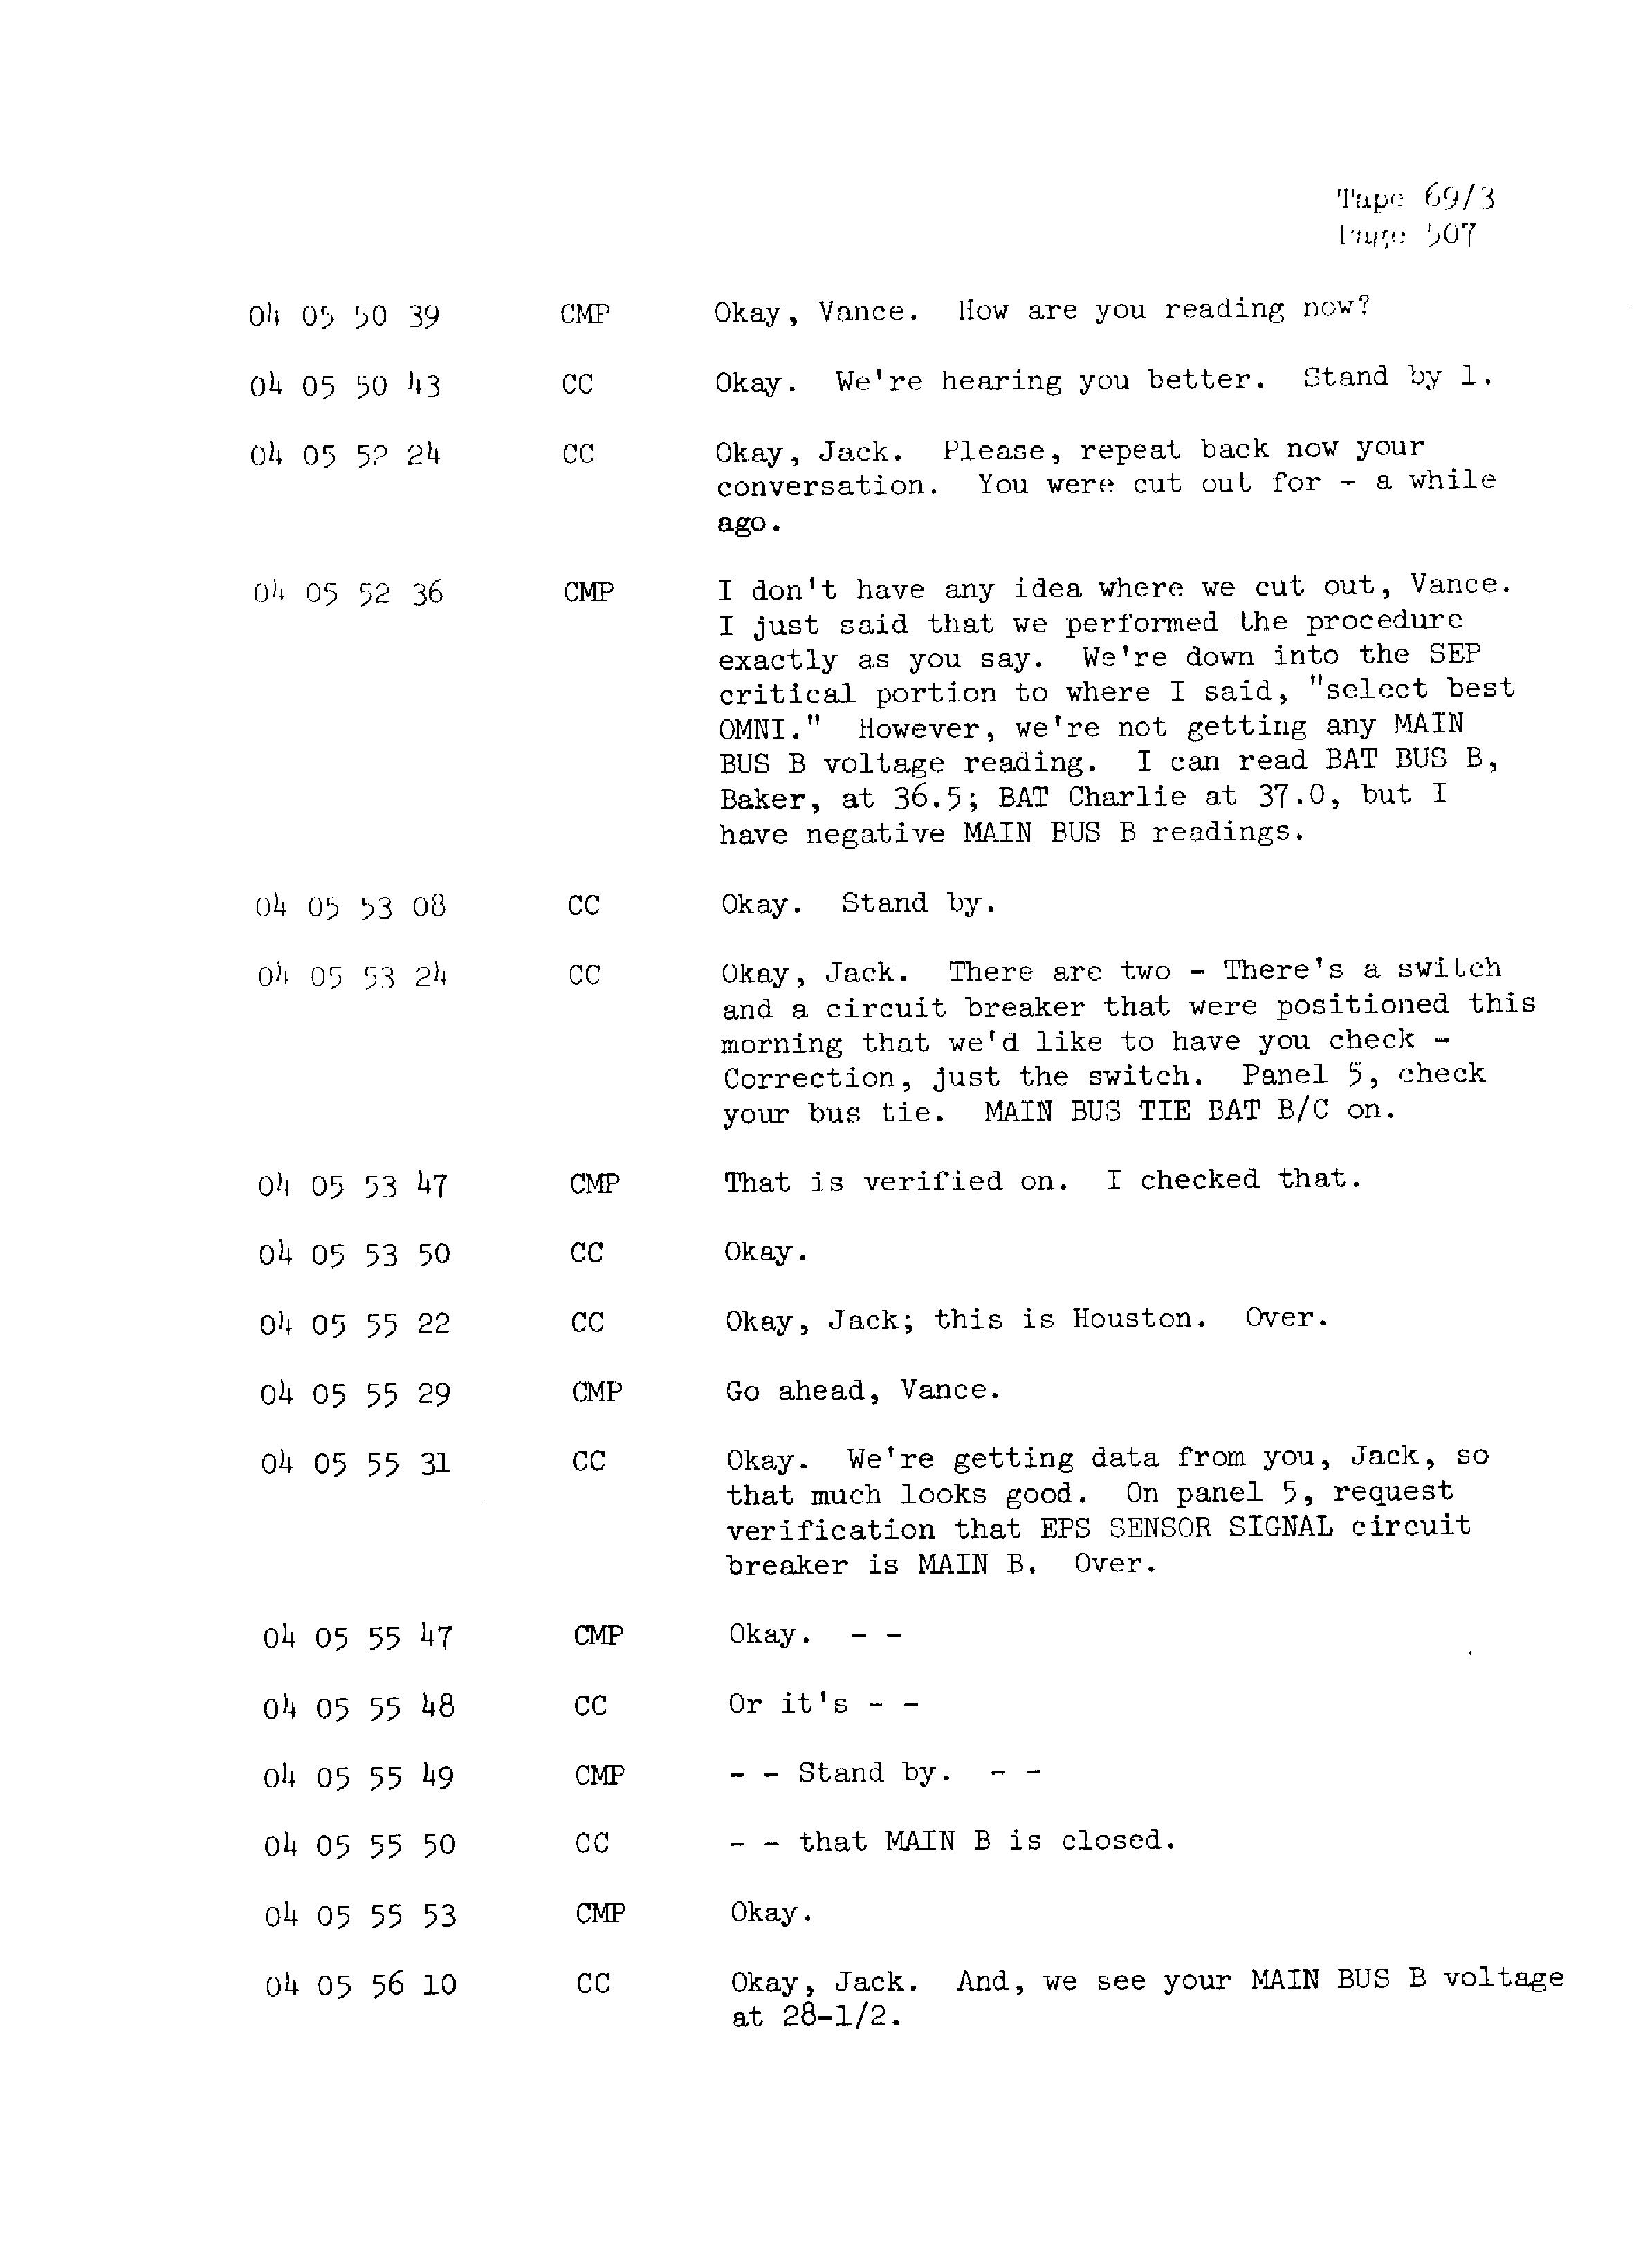 Page 514 of Apollo 13’s original transcript